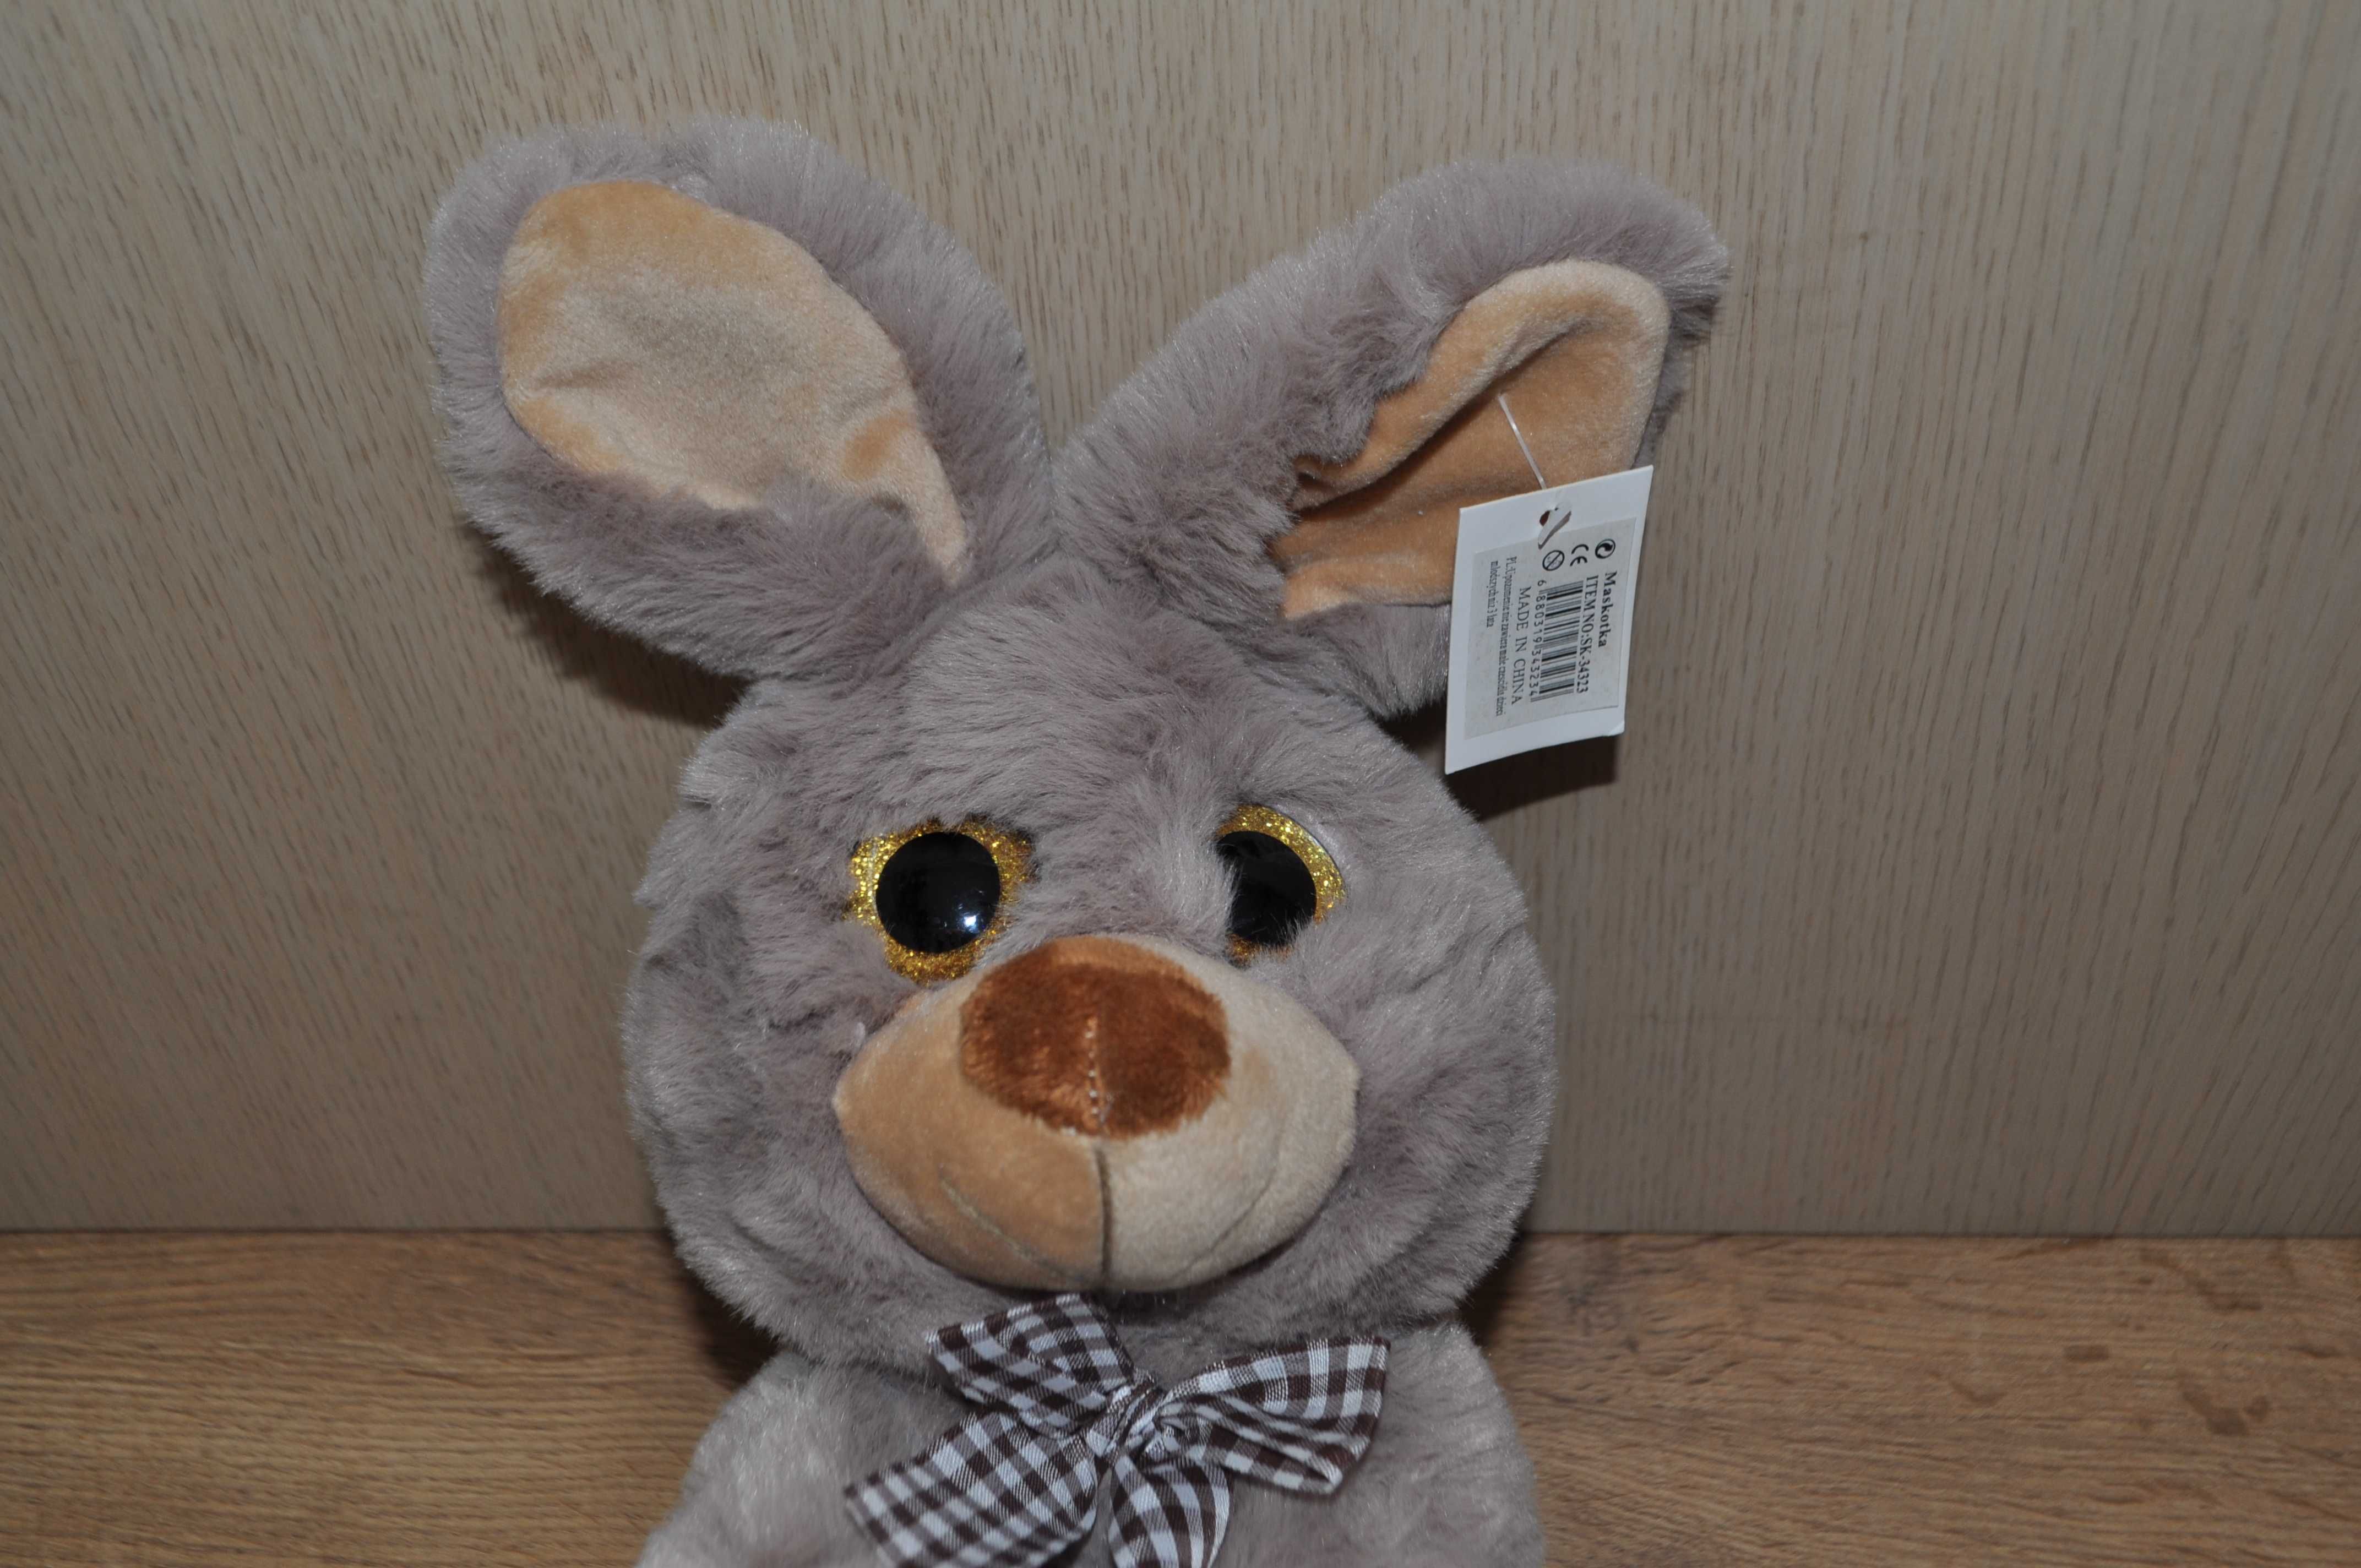 Nowa maskotka królik duże oczy ok.28cm